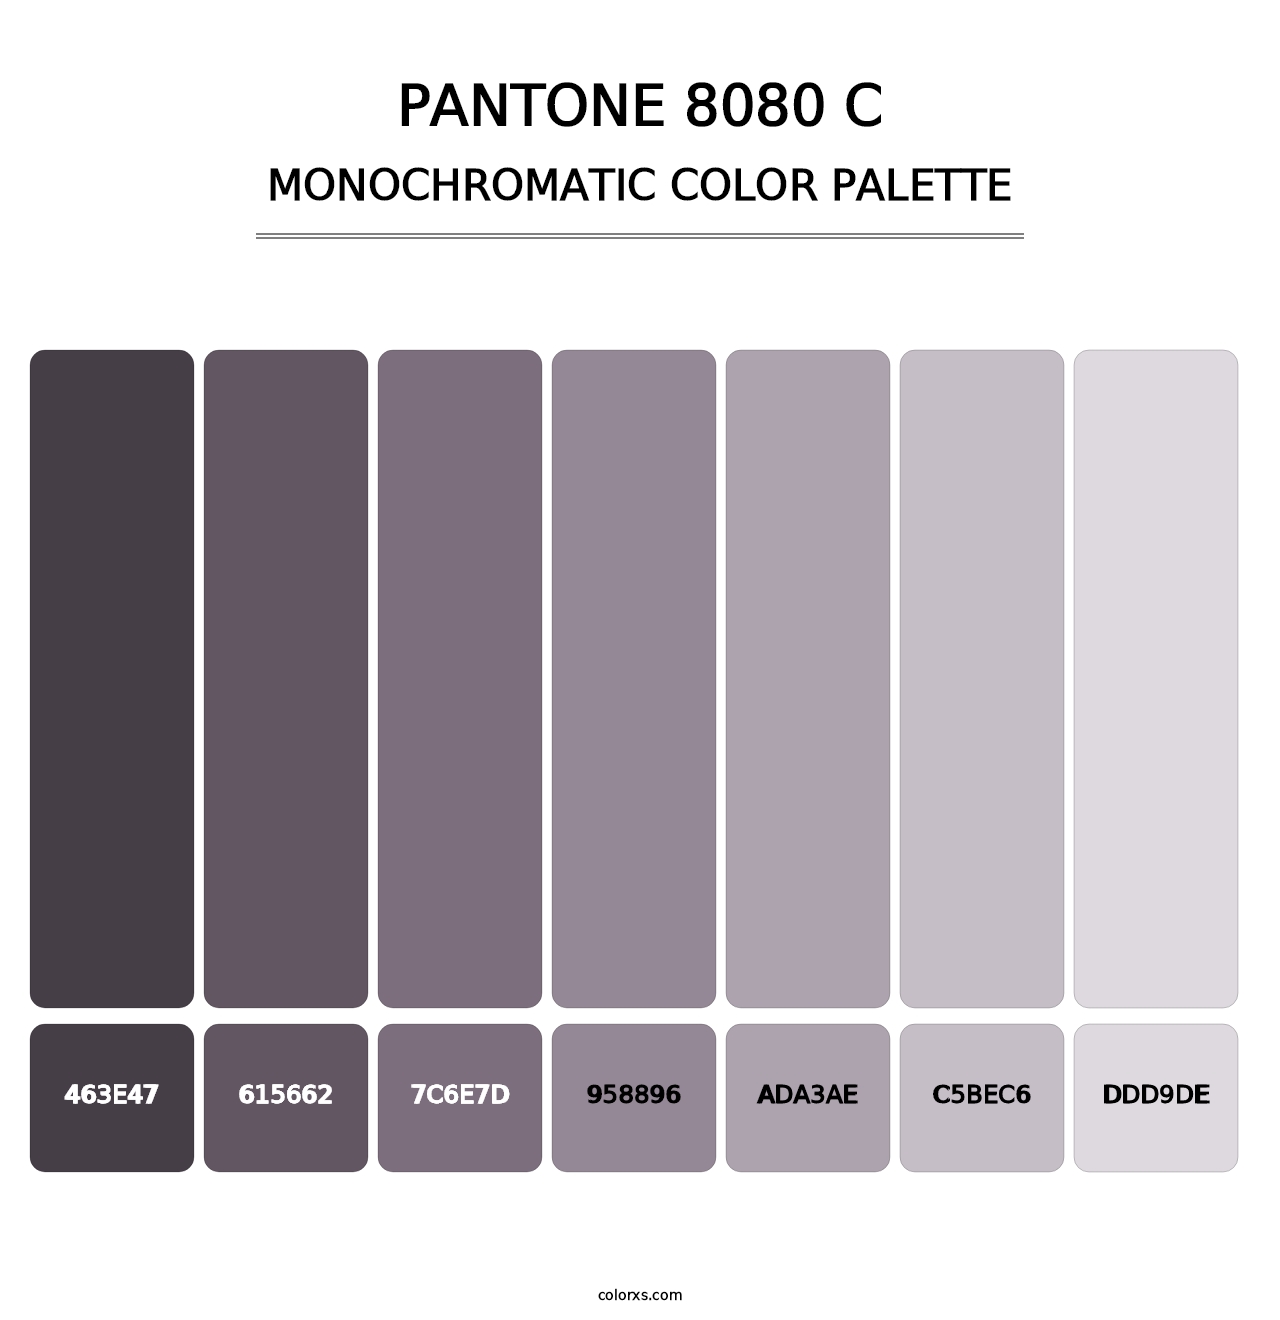 PANTONE 8080 C - Monochromatic Color Palette